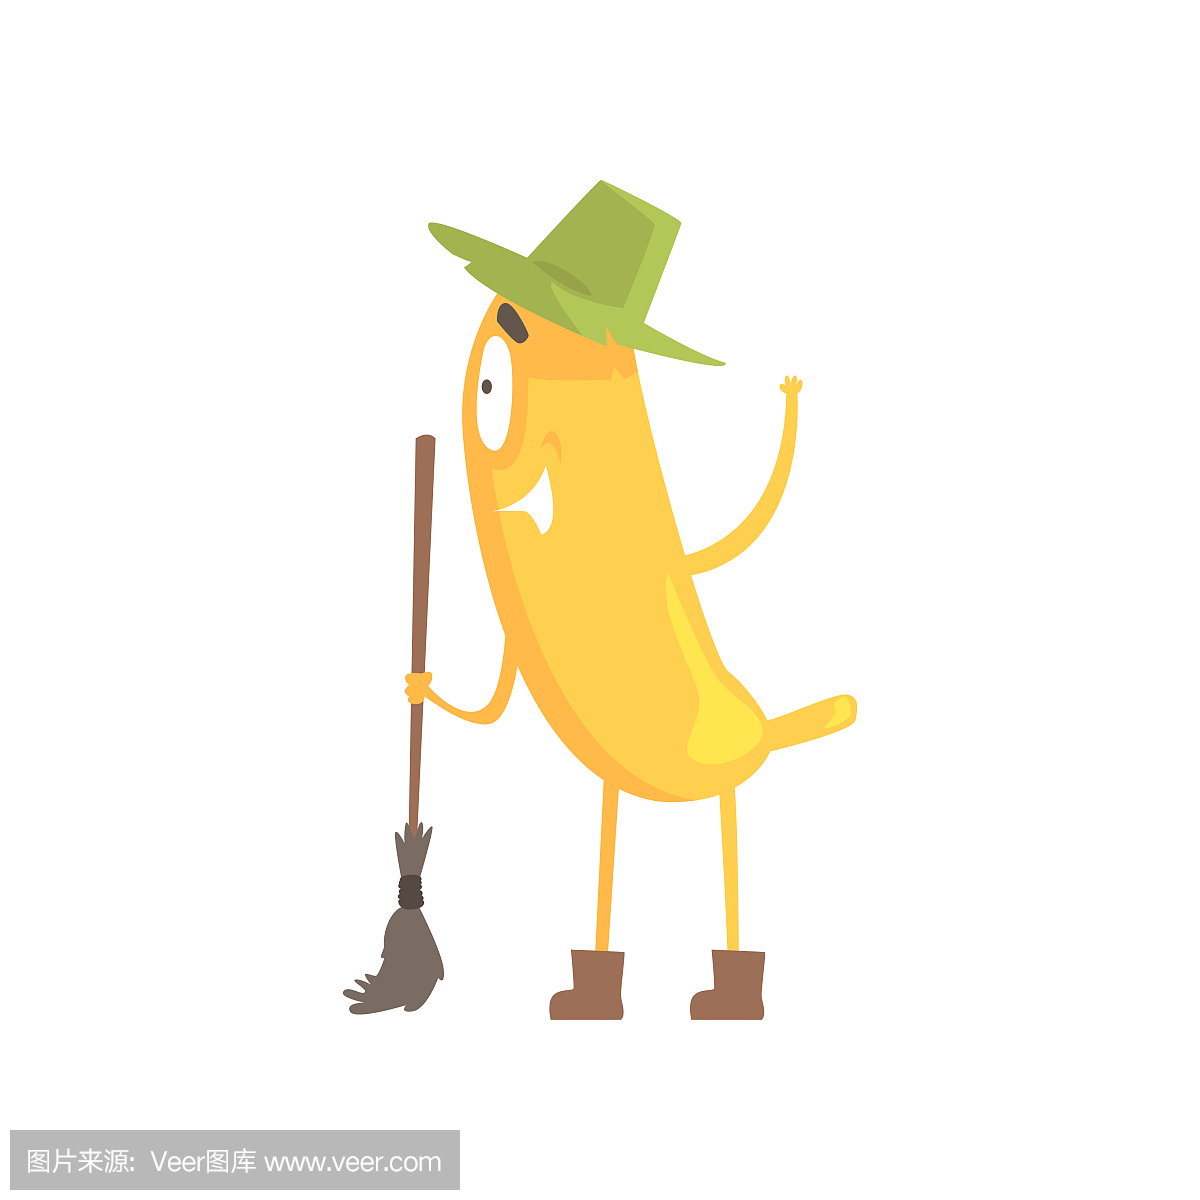 可爱有趣的香蕉,在绿色的帽子,拿着扫帚,卡通搞